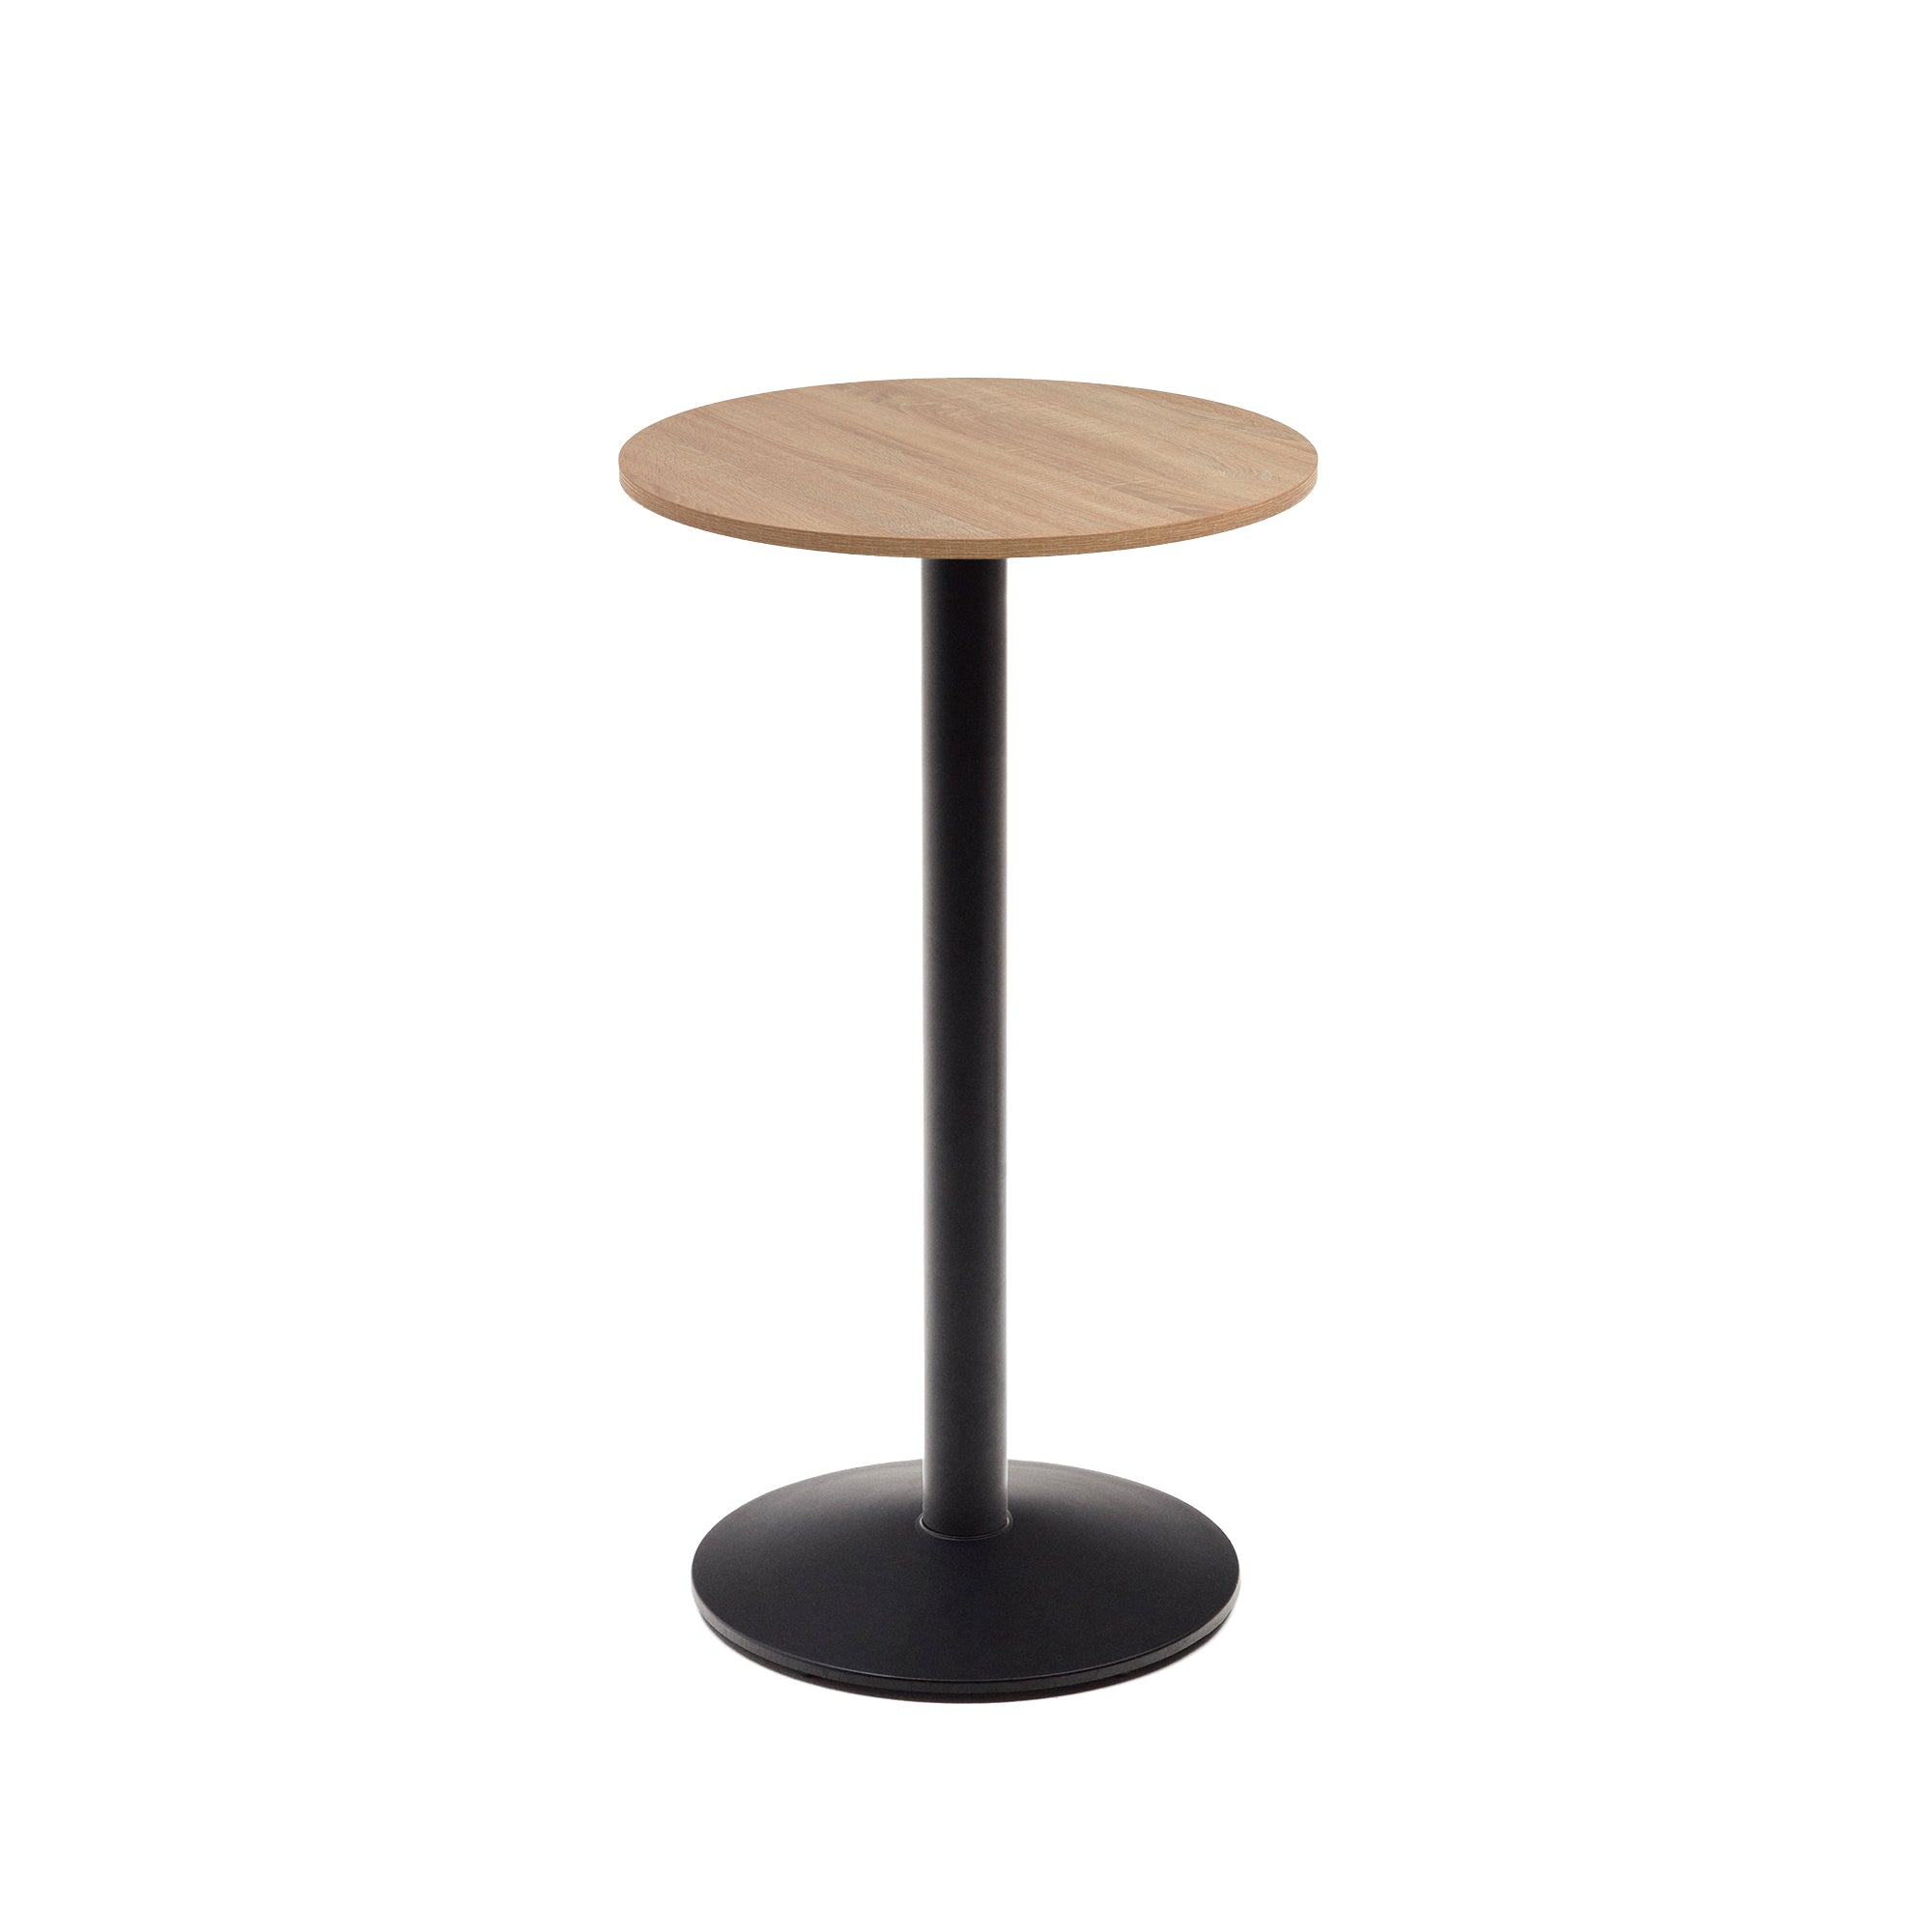 Esilda magas kerek asztal, natúr melaminból, fekete festett fémlábbal, Ø60x96cm